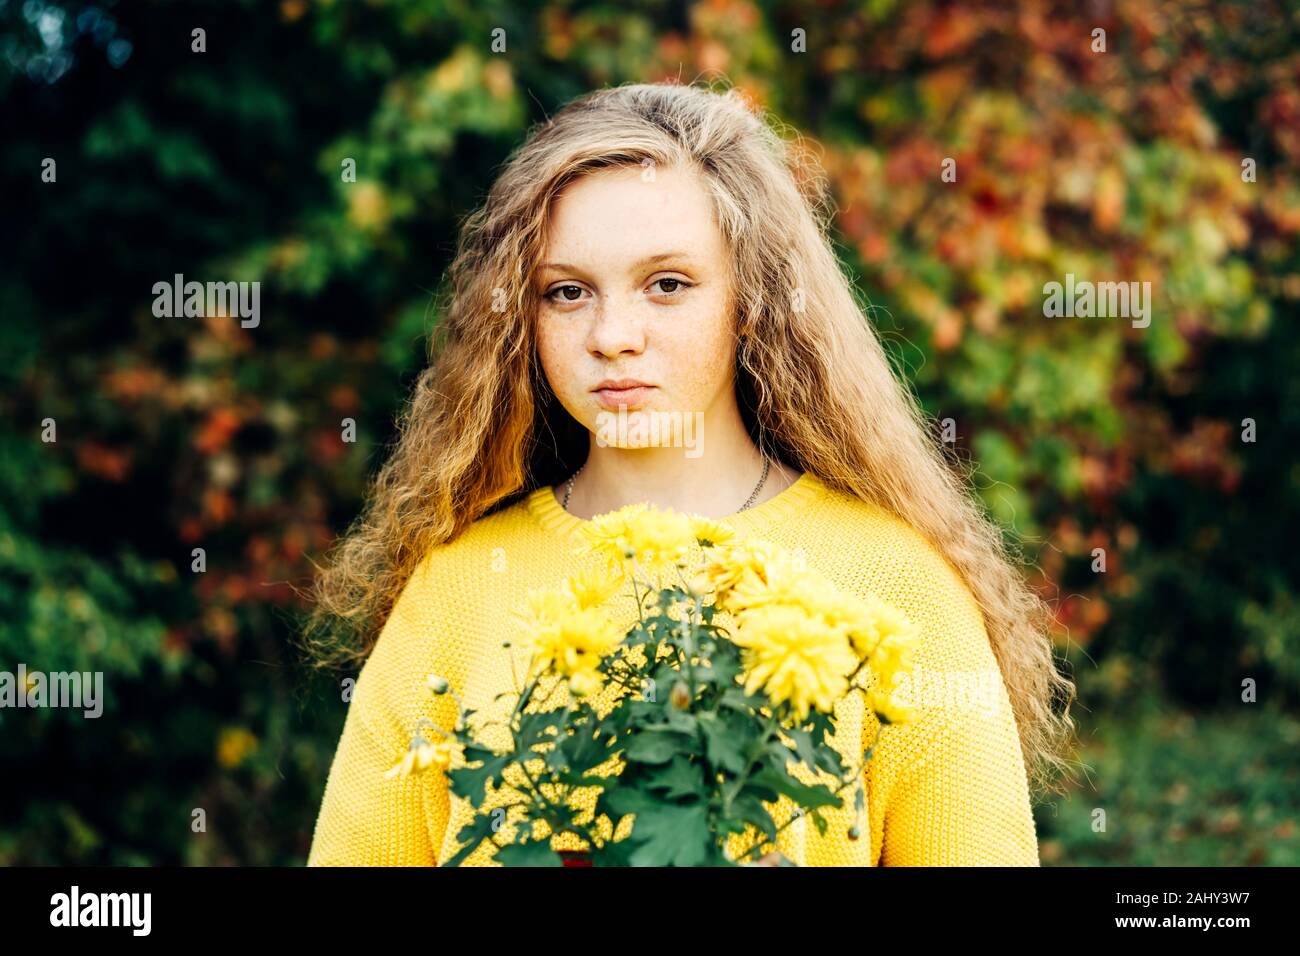 Allegro sorridente ragazza adolescente di quattordici anni con ricci lunghi capelli rossi Foto Stock